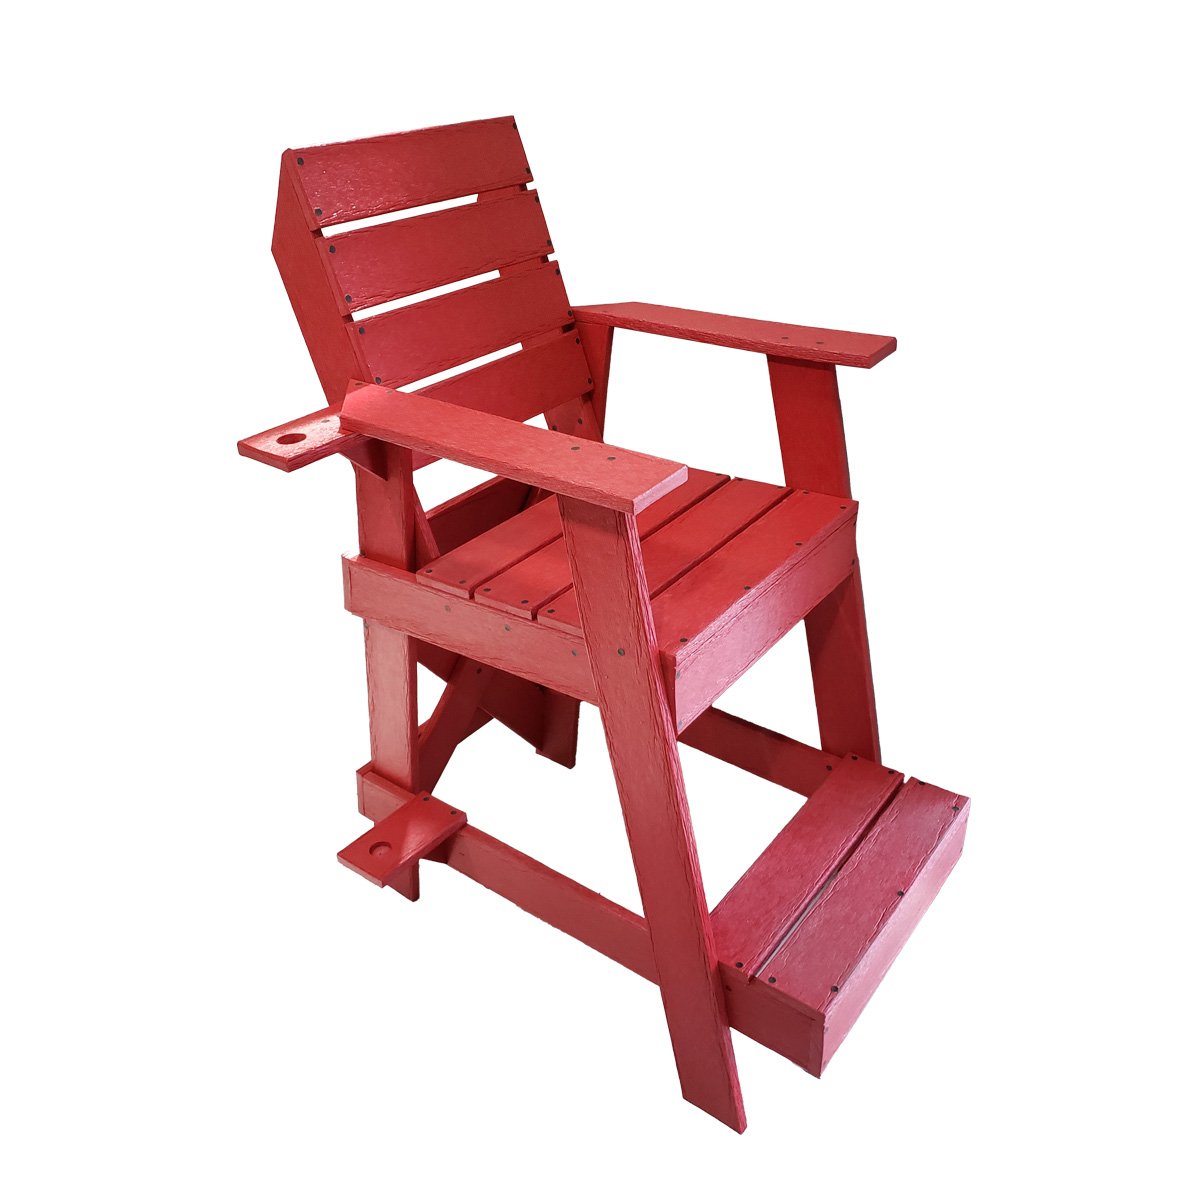 Cadeira Salva Vidas Vermelha em Madeira Plástica Maciça 100% Reciclada 1,6m / Lc-09sv - 1